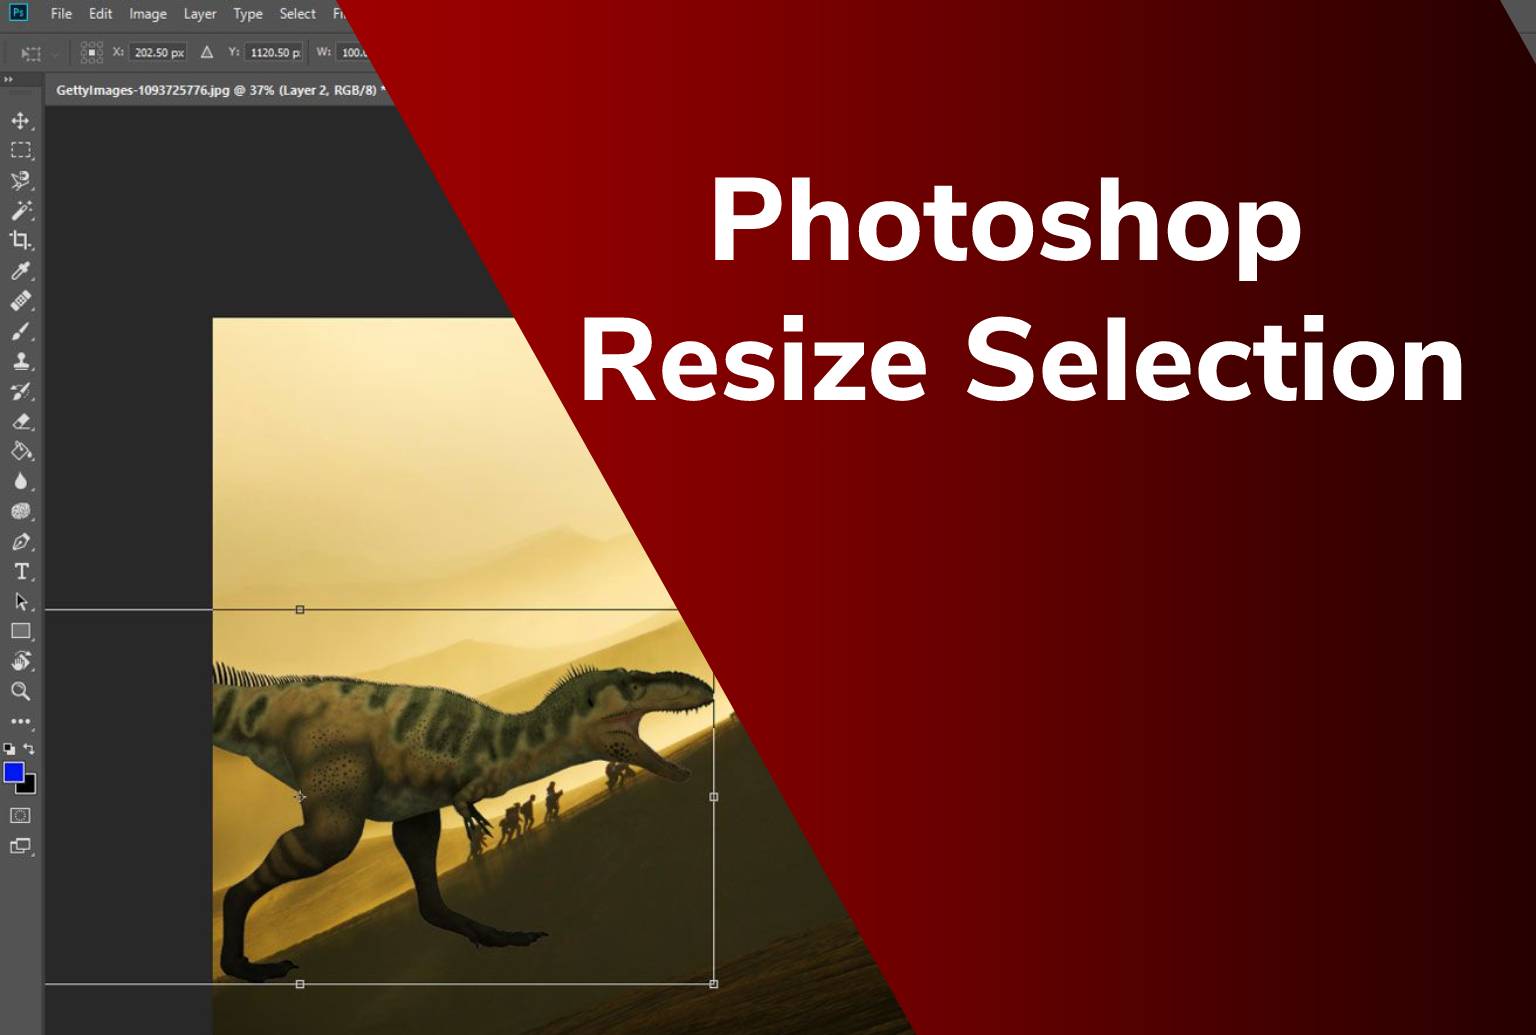 Photoshop Resize Selection